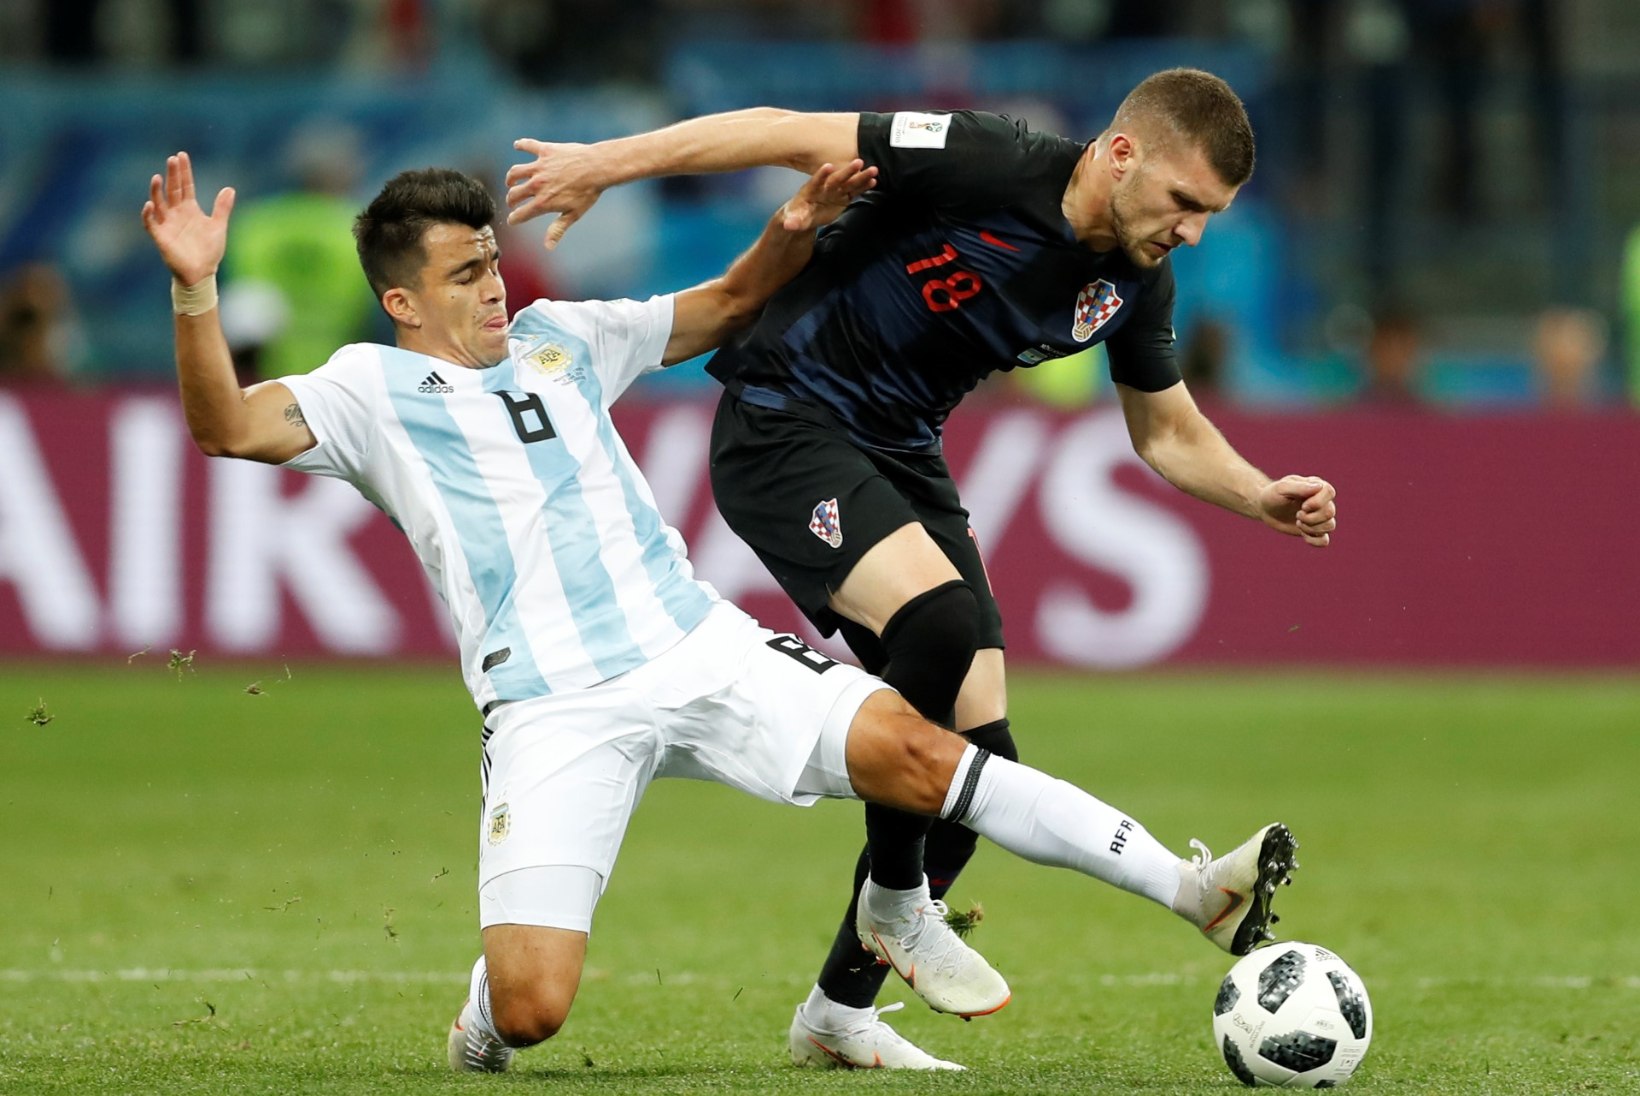 NII SEE JUHTUS | Jalgpalli MM: Prantsusmaa ja Horvaatia pääsesid edasi, Argentina sipleb mudas